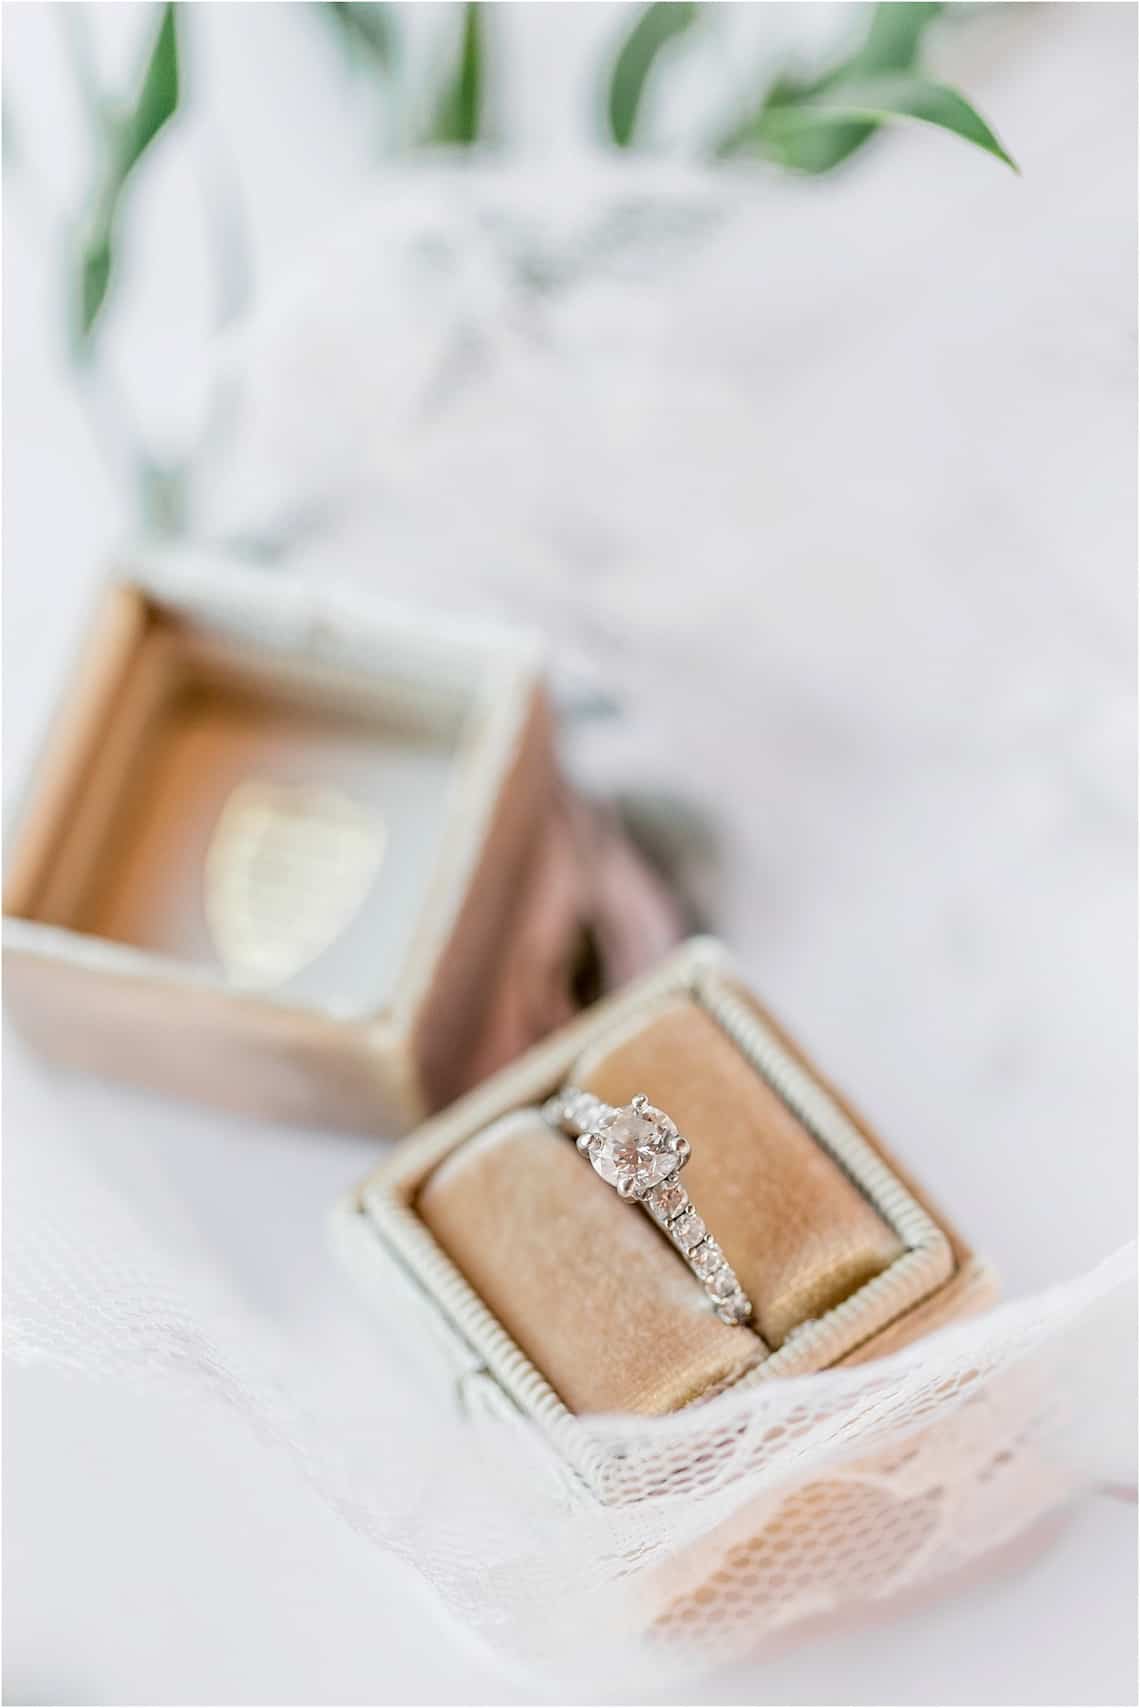 Wedding Ring in Ring Box